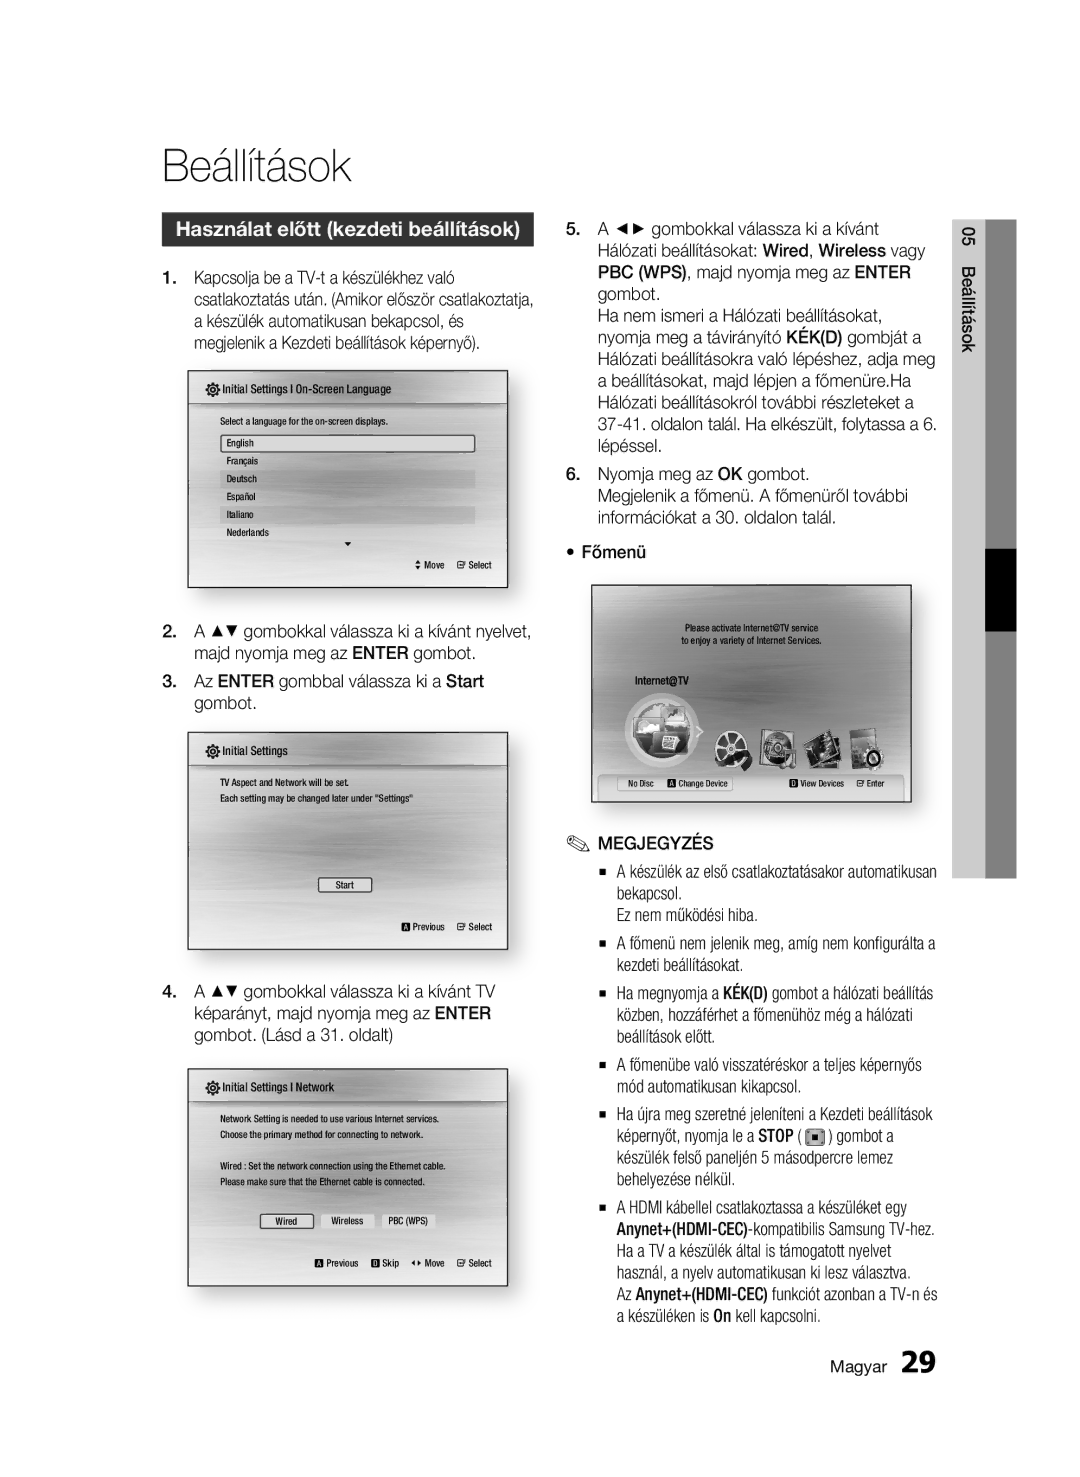 Samsung BD-C7500W/XEE manual Beállítások, Használat előtt kezdeti beállítások, Az Enter gombbal válassza ki a Start gombot 